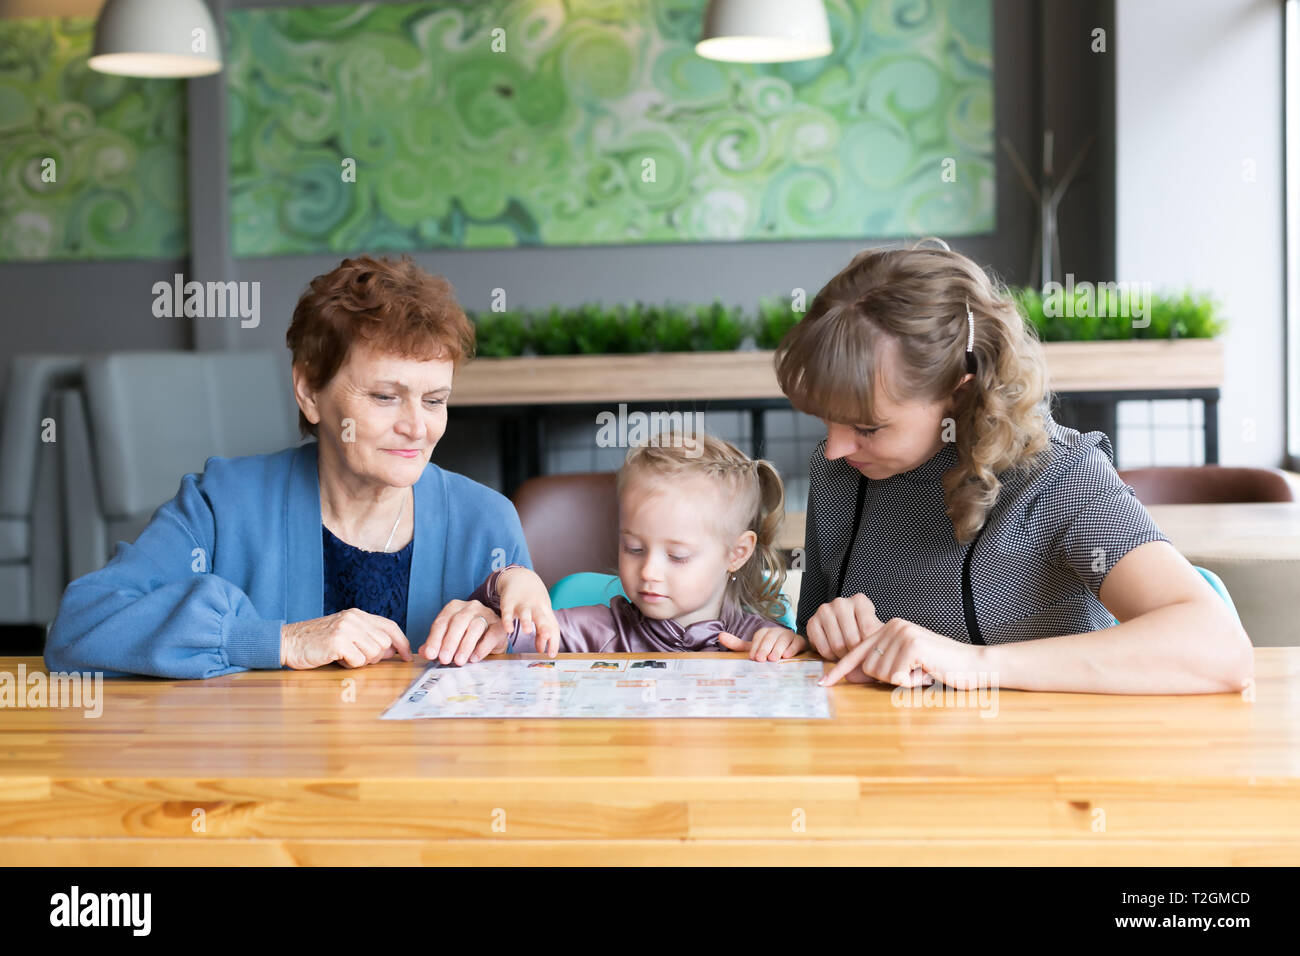 Weibliche Familie mit drei Generationen von Frauen Enkelin Mutter und Großmutter beobachten das Menü in einem Restaurant Stockfoto